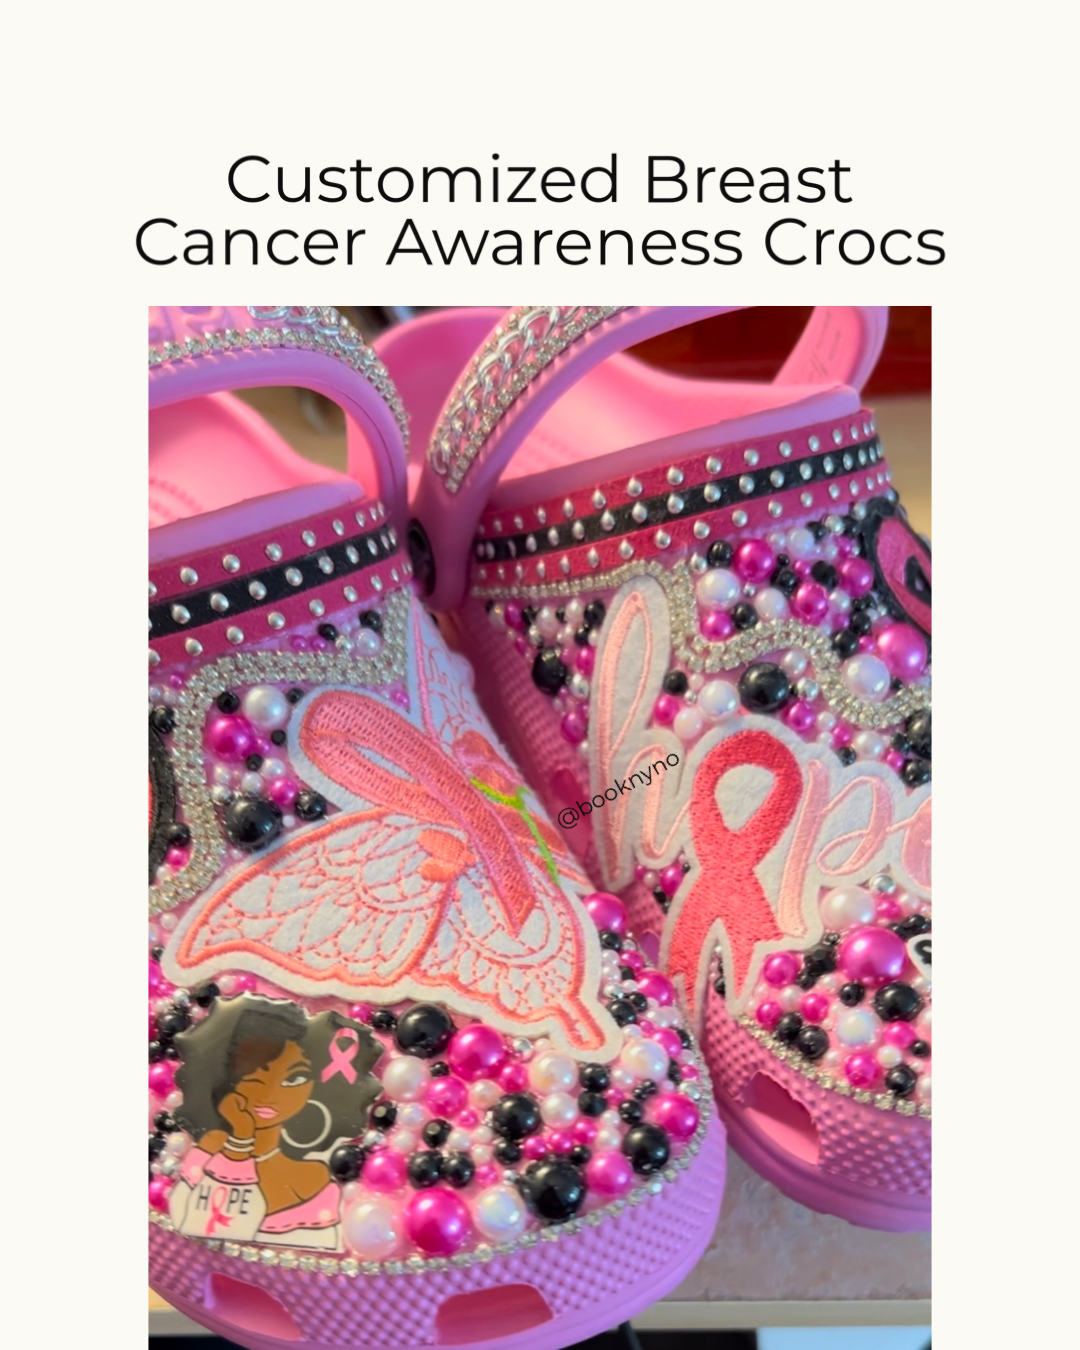 Customized Breast Cancer Awareness Crocs